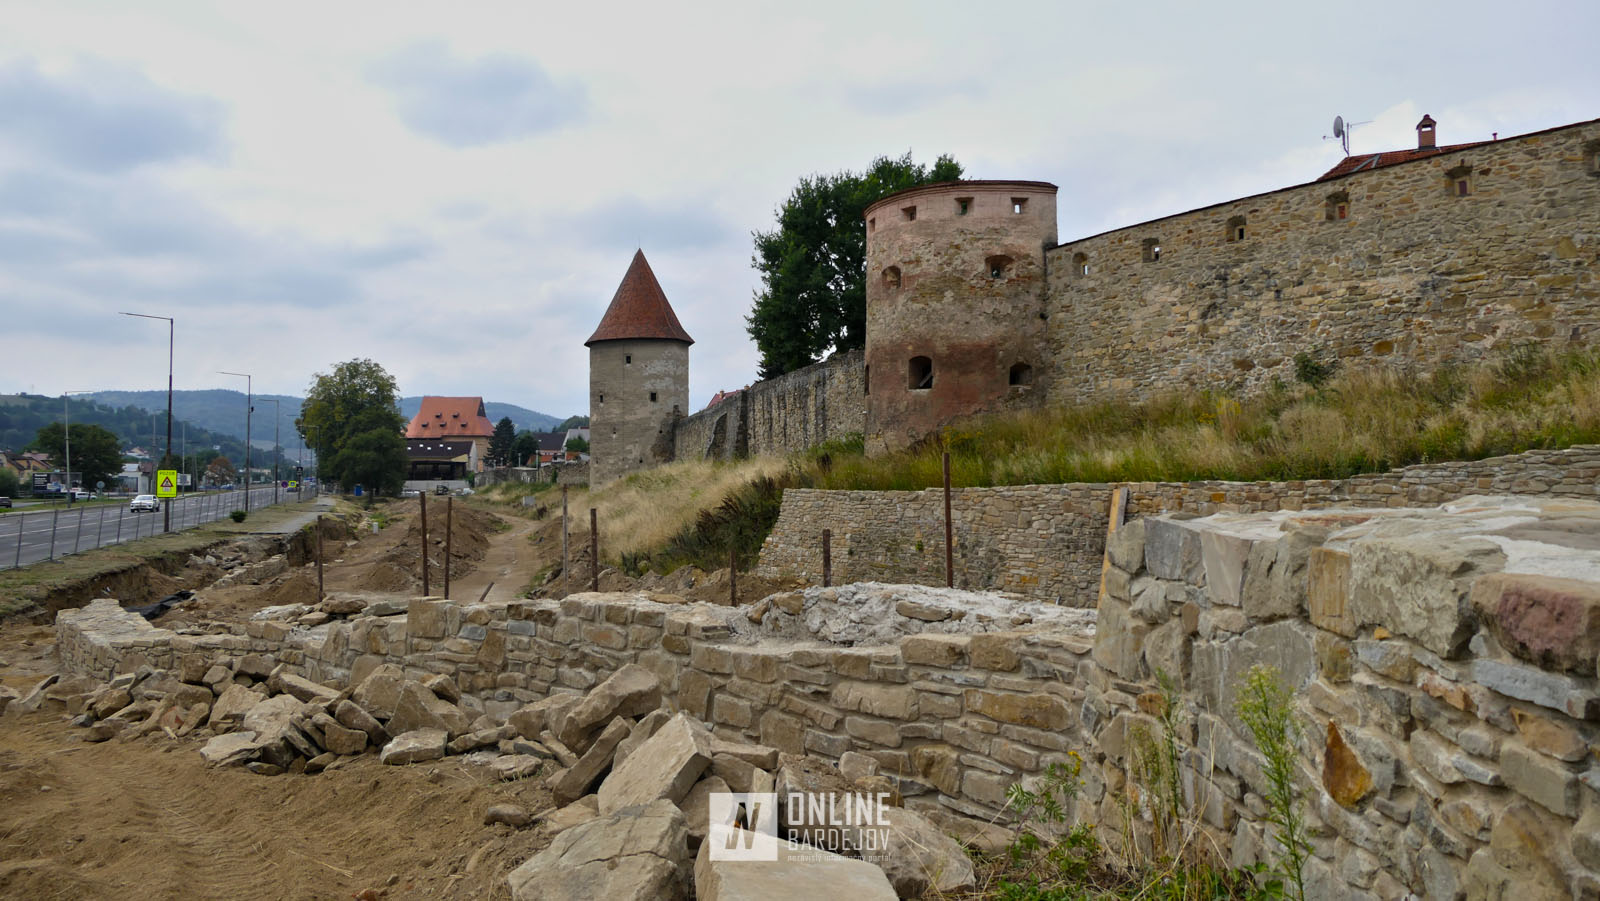 OBRAZOM: Obnova vonkajšieho priekopového múru vo východnej časti opevnenia mierne pokročila.